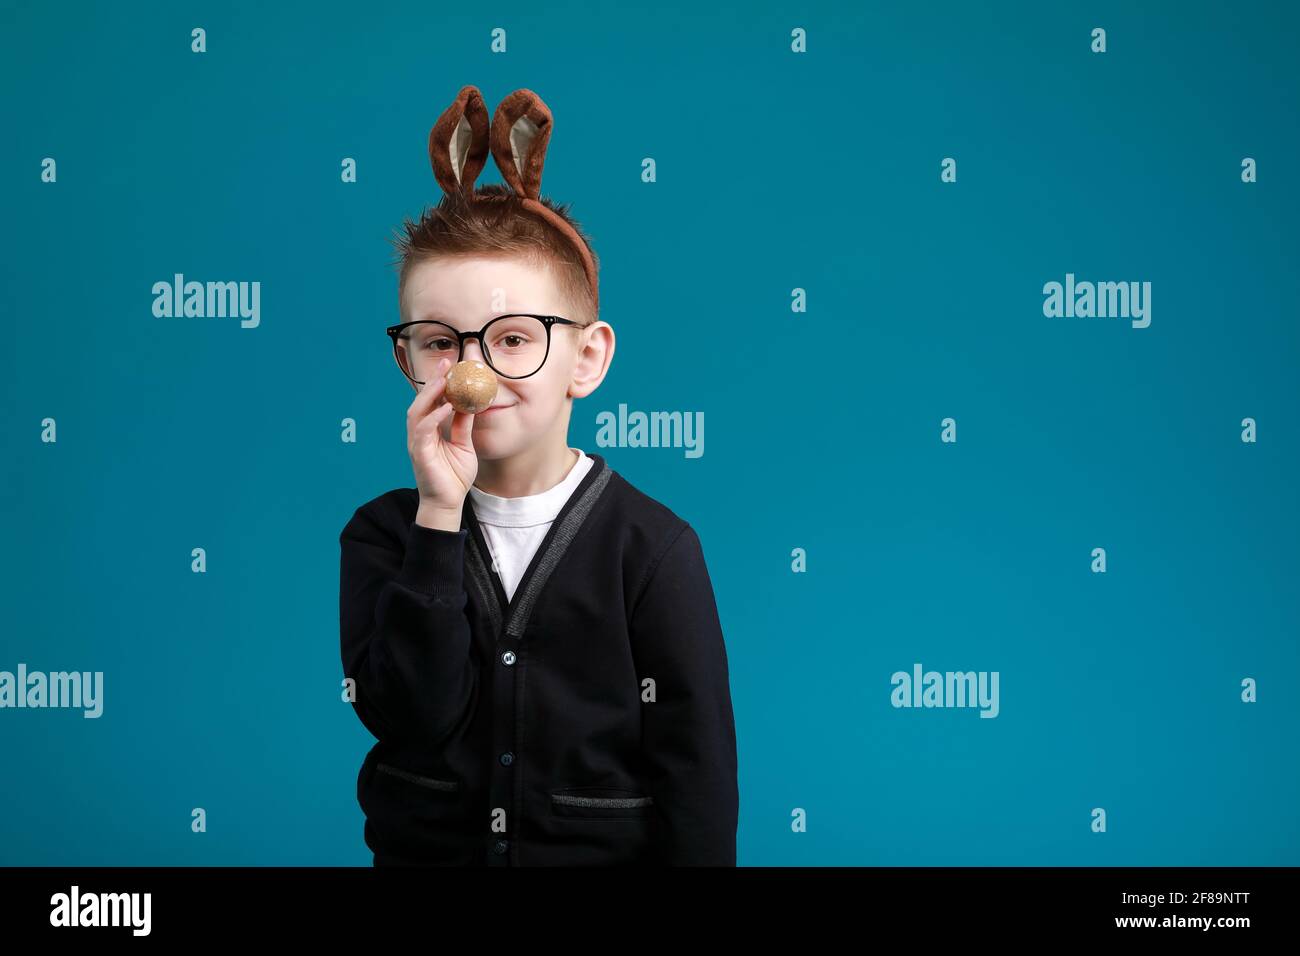 Fröhlicher Junge in Hasenohren auf dem Kopf auf blauem Studiohintergrund.  Aufgeregt verrückt lächelnd glückliches Kind in einer Brille. Osterblau  Farbe des Jahres malen Stockfotografie - Alamy